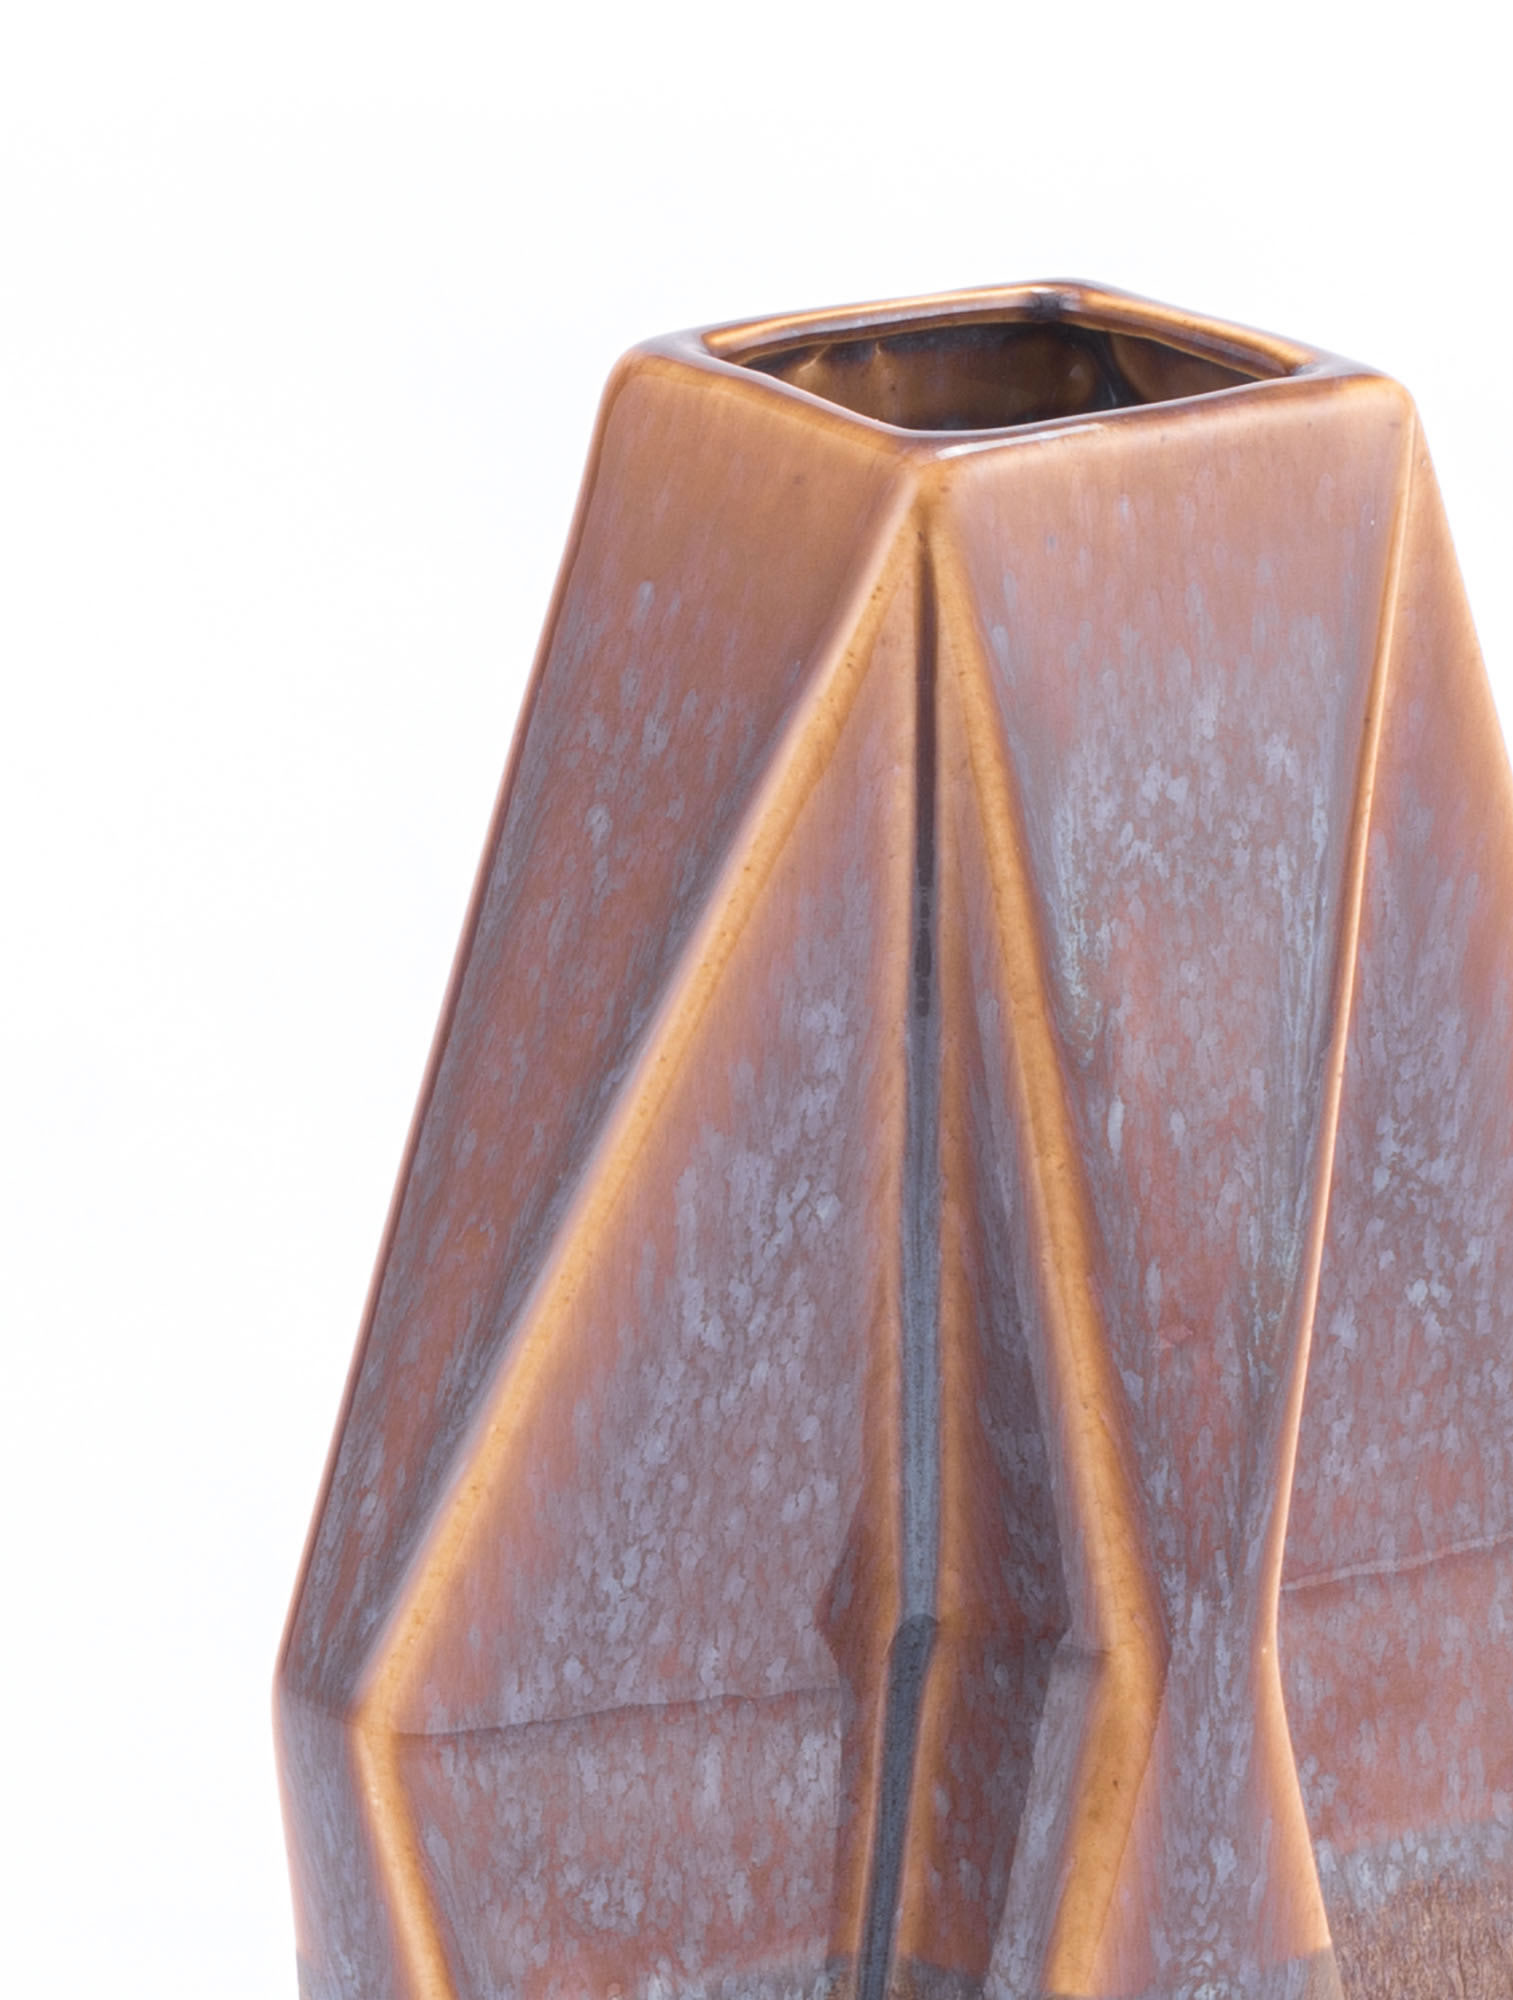 7.5" x 3.1" x 13.2" Brown, Ceramic, Medium Vase